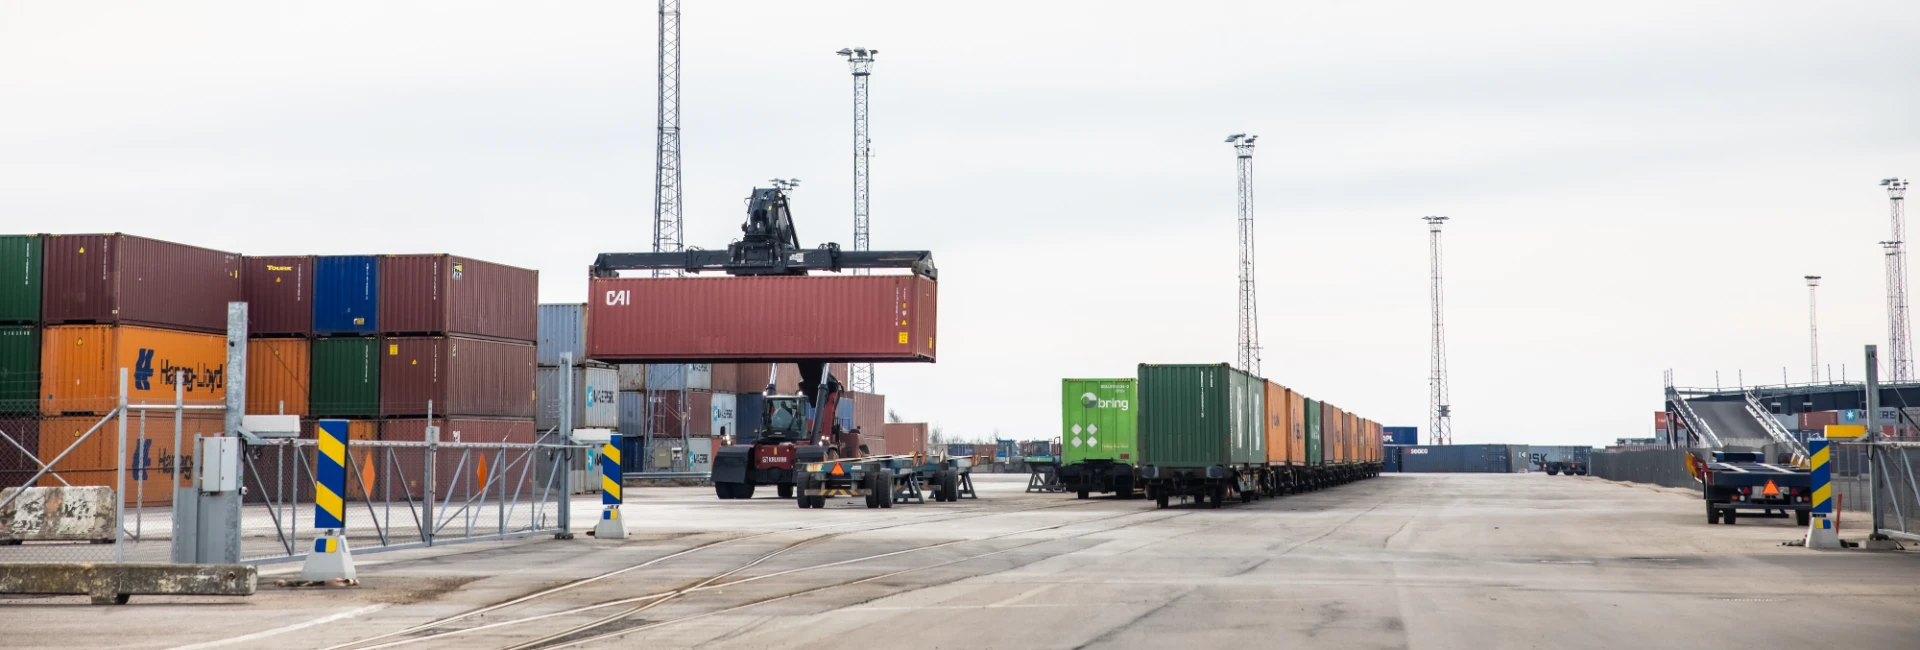 Truck kör container och tågvagnar står parkerade i hamnmiljö